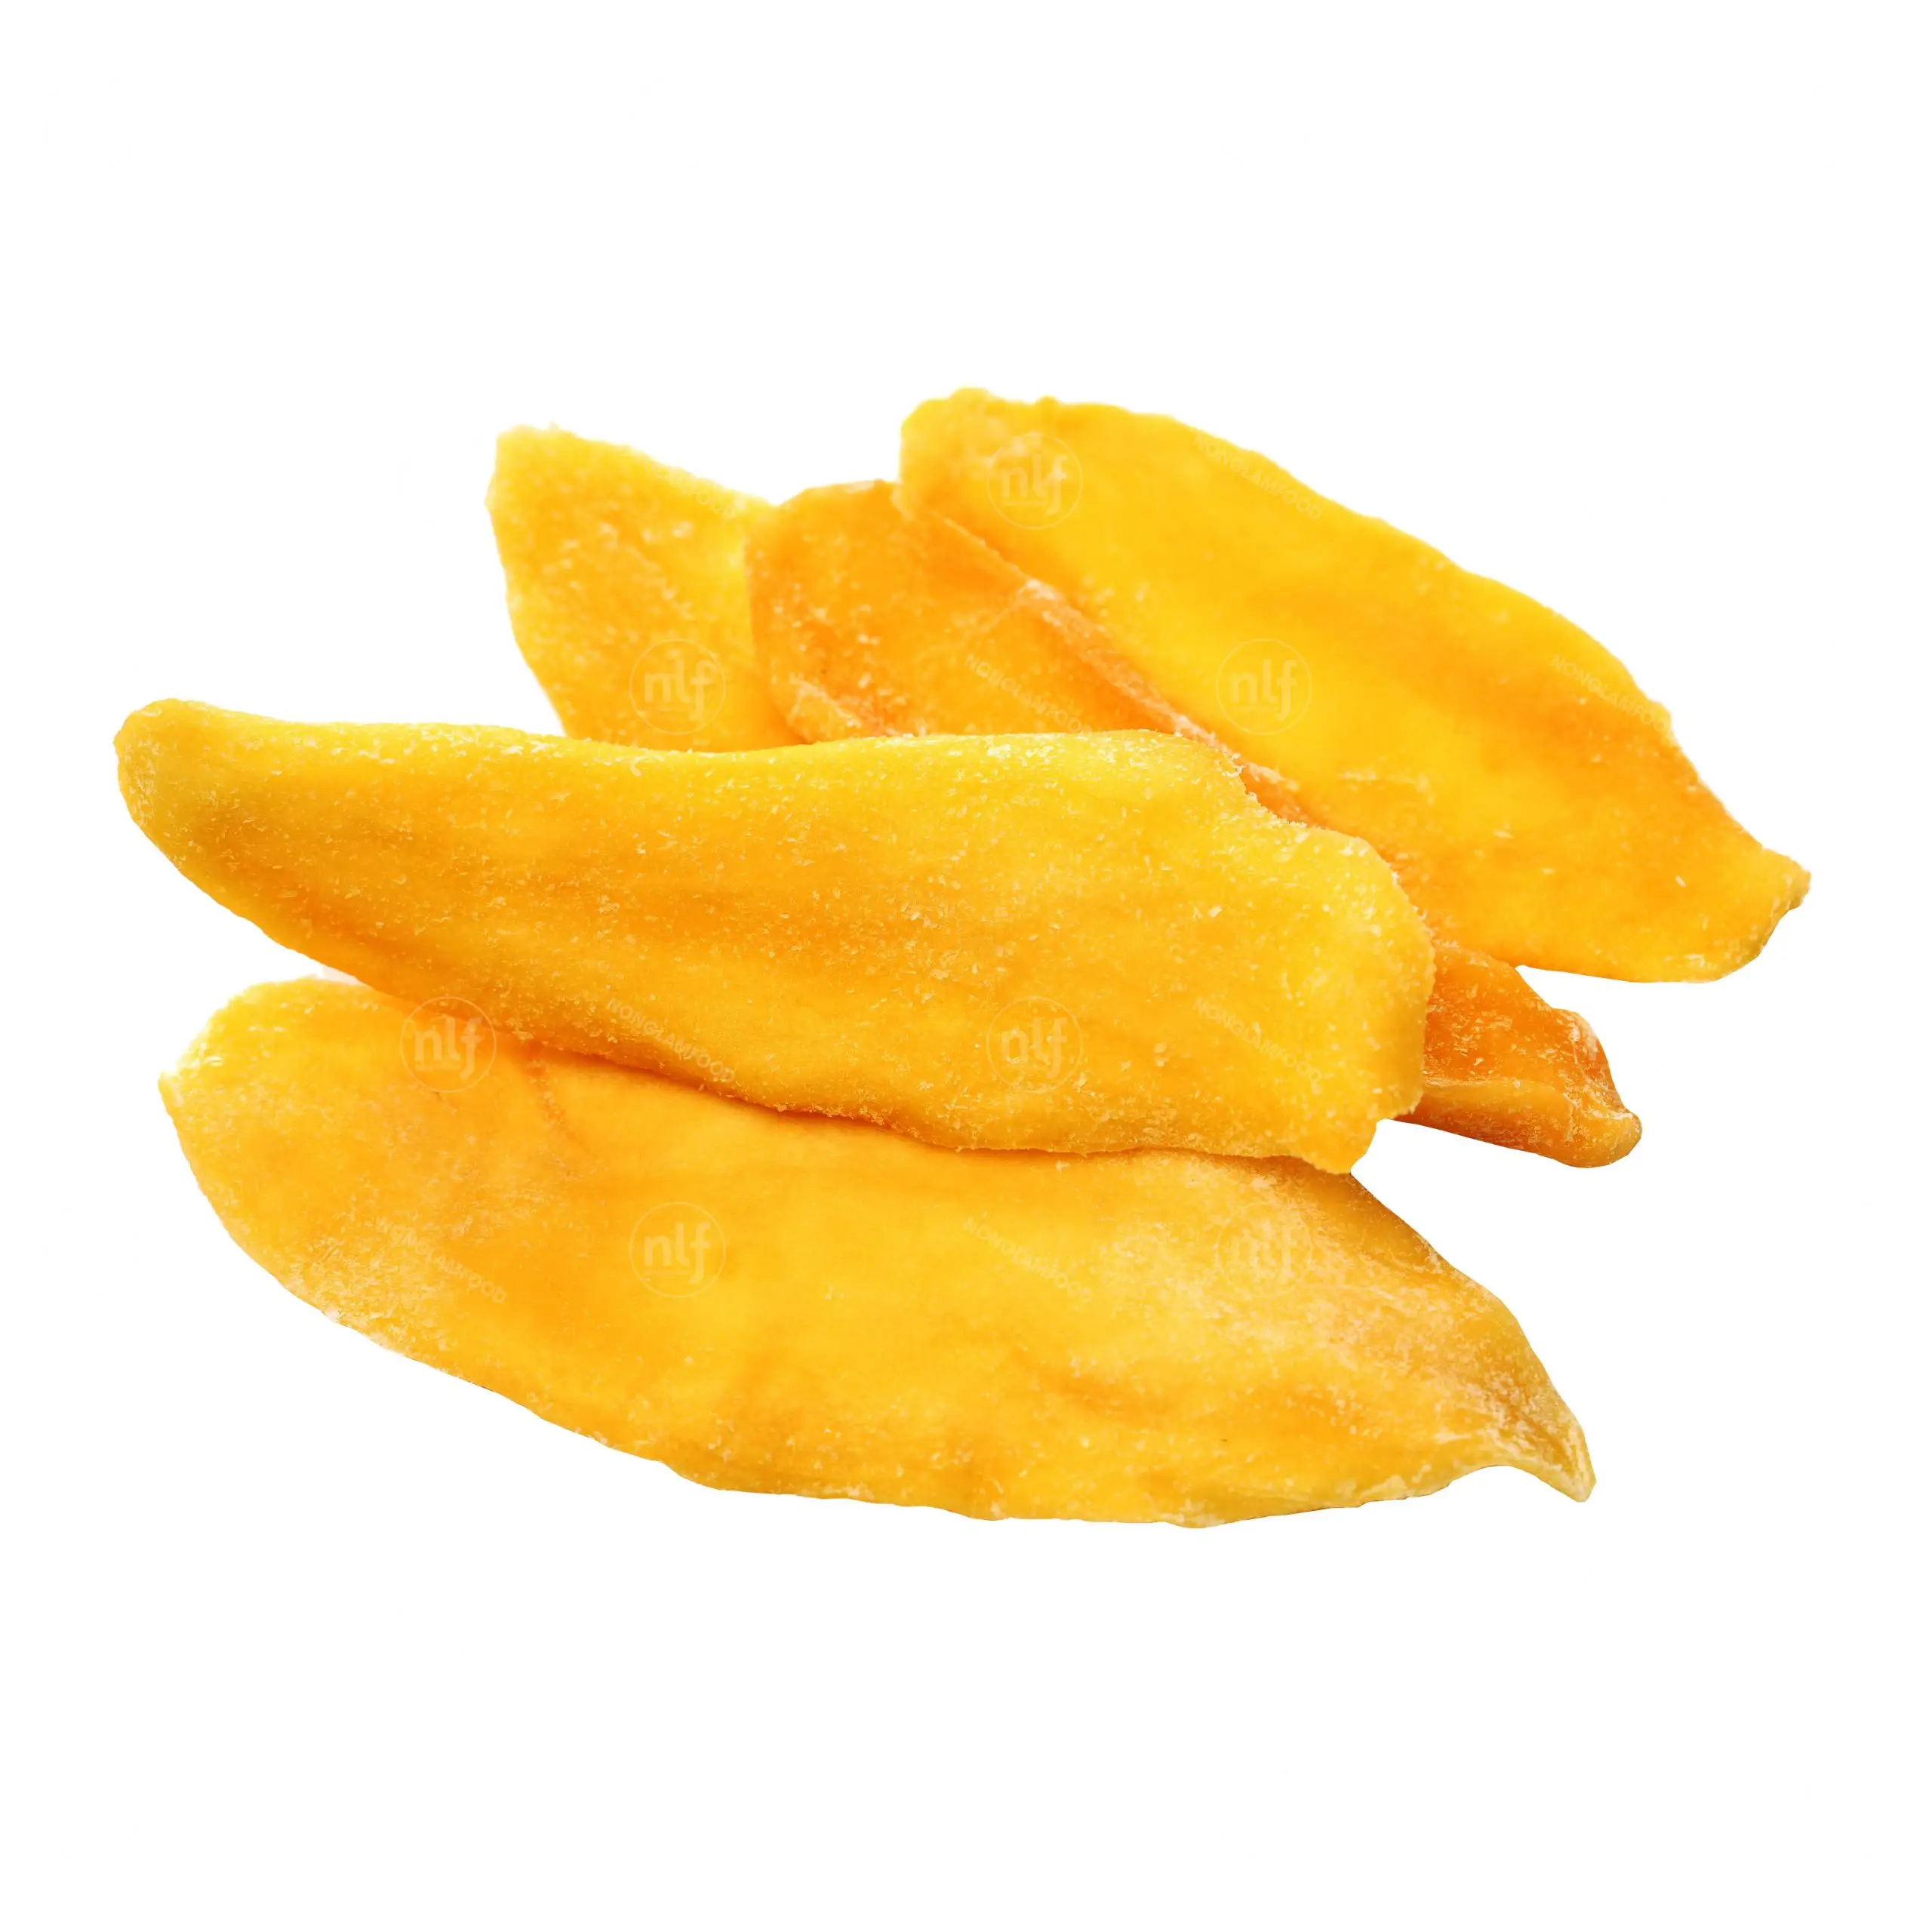 高品質の乾燥マンゴーは食品安全で衛生的で、明るい黄色で透明な由来で、友人への贈り物として使用されます